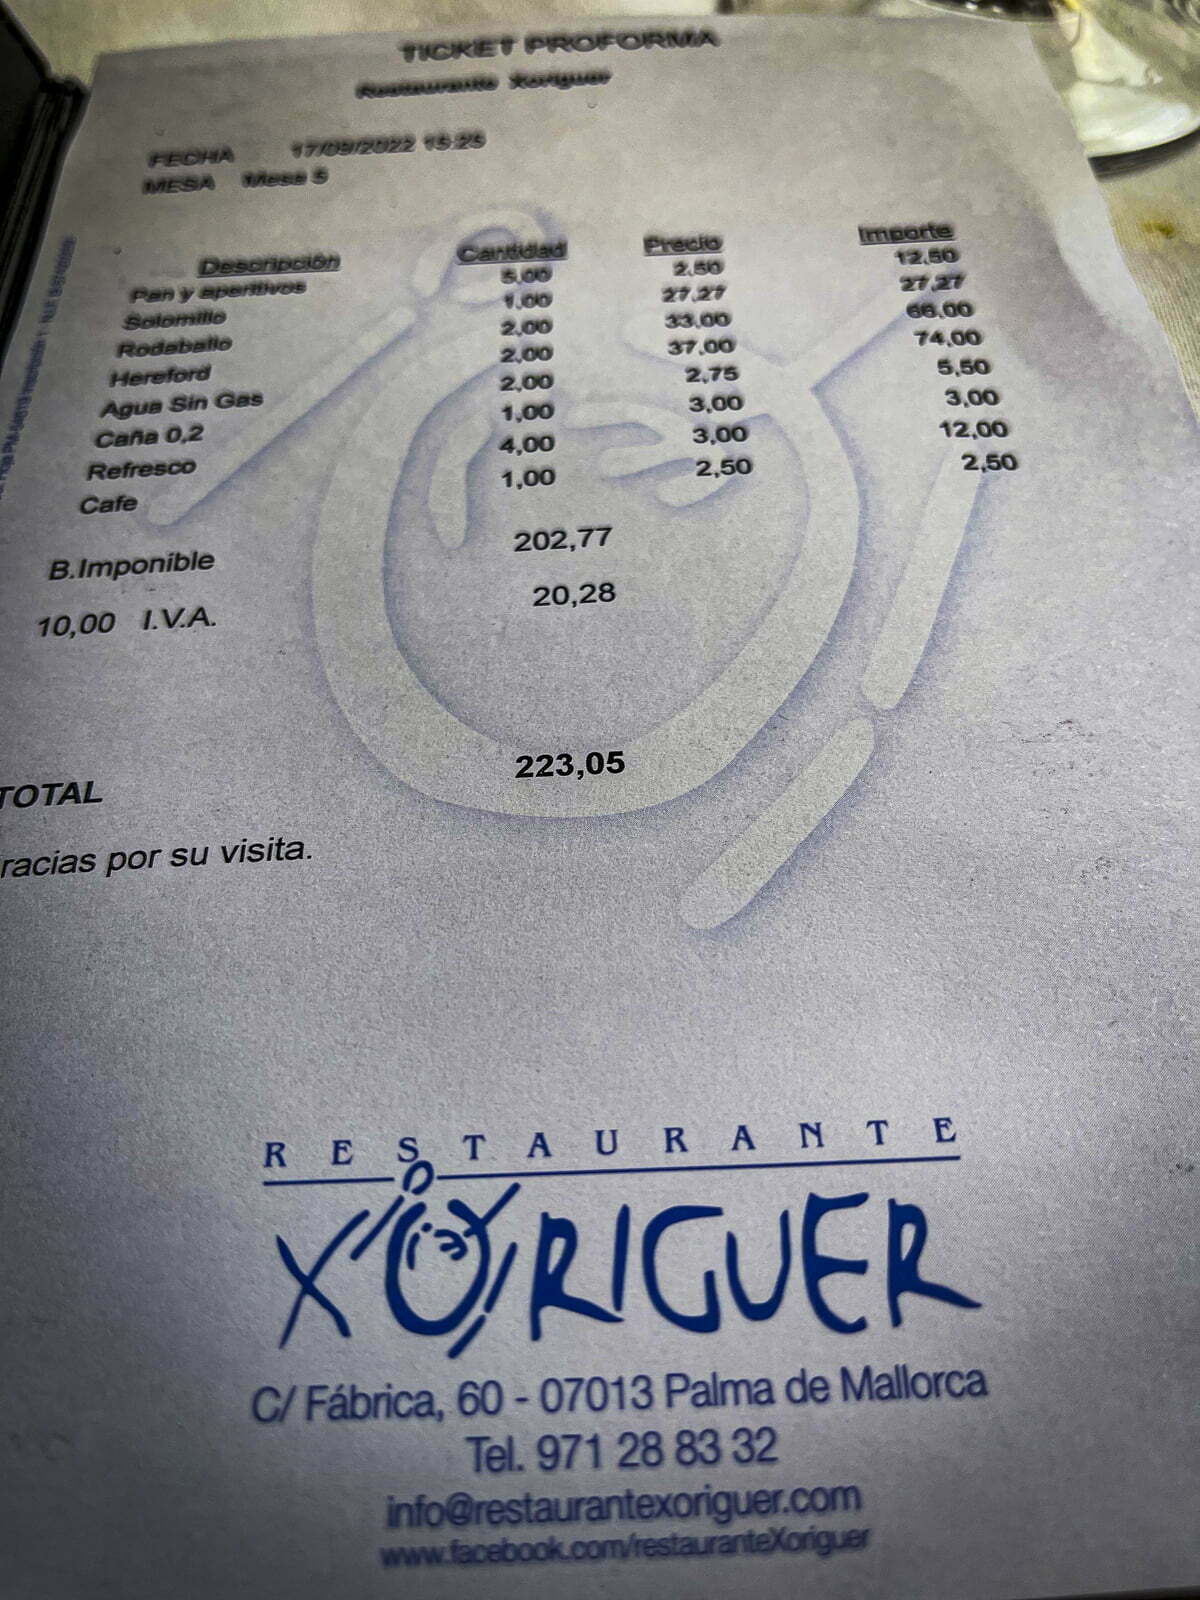 Restaurant Xoriguer bill